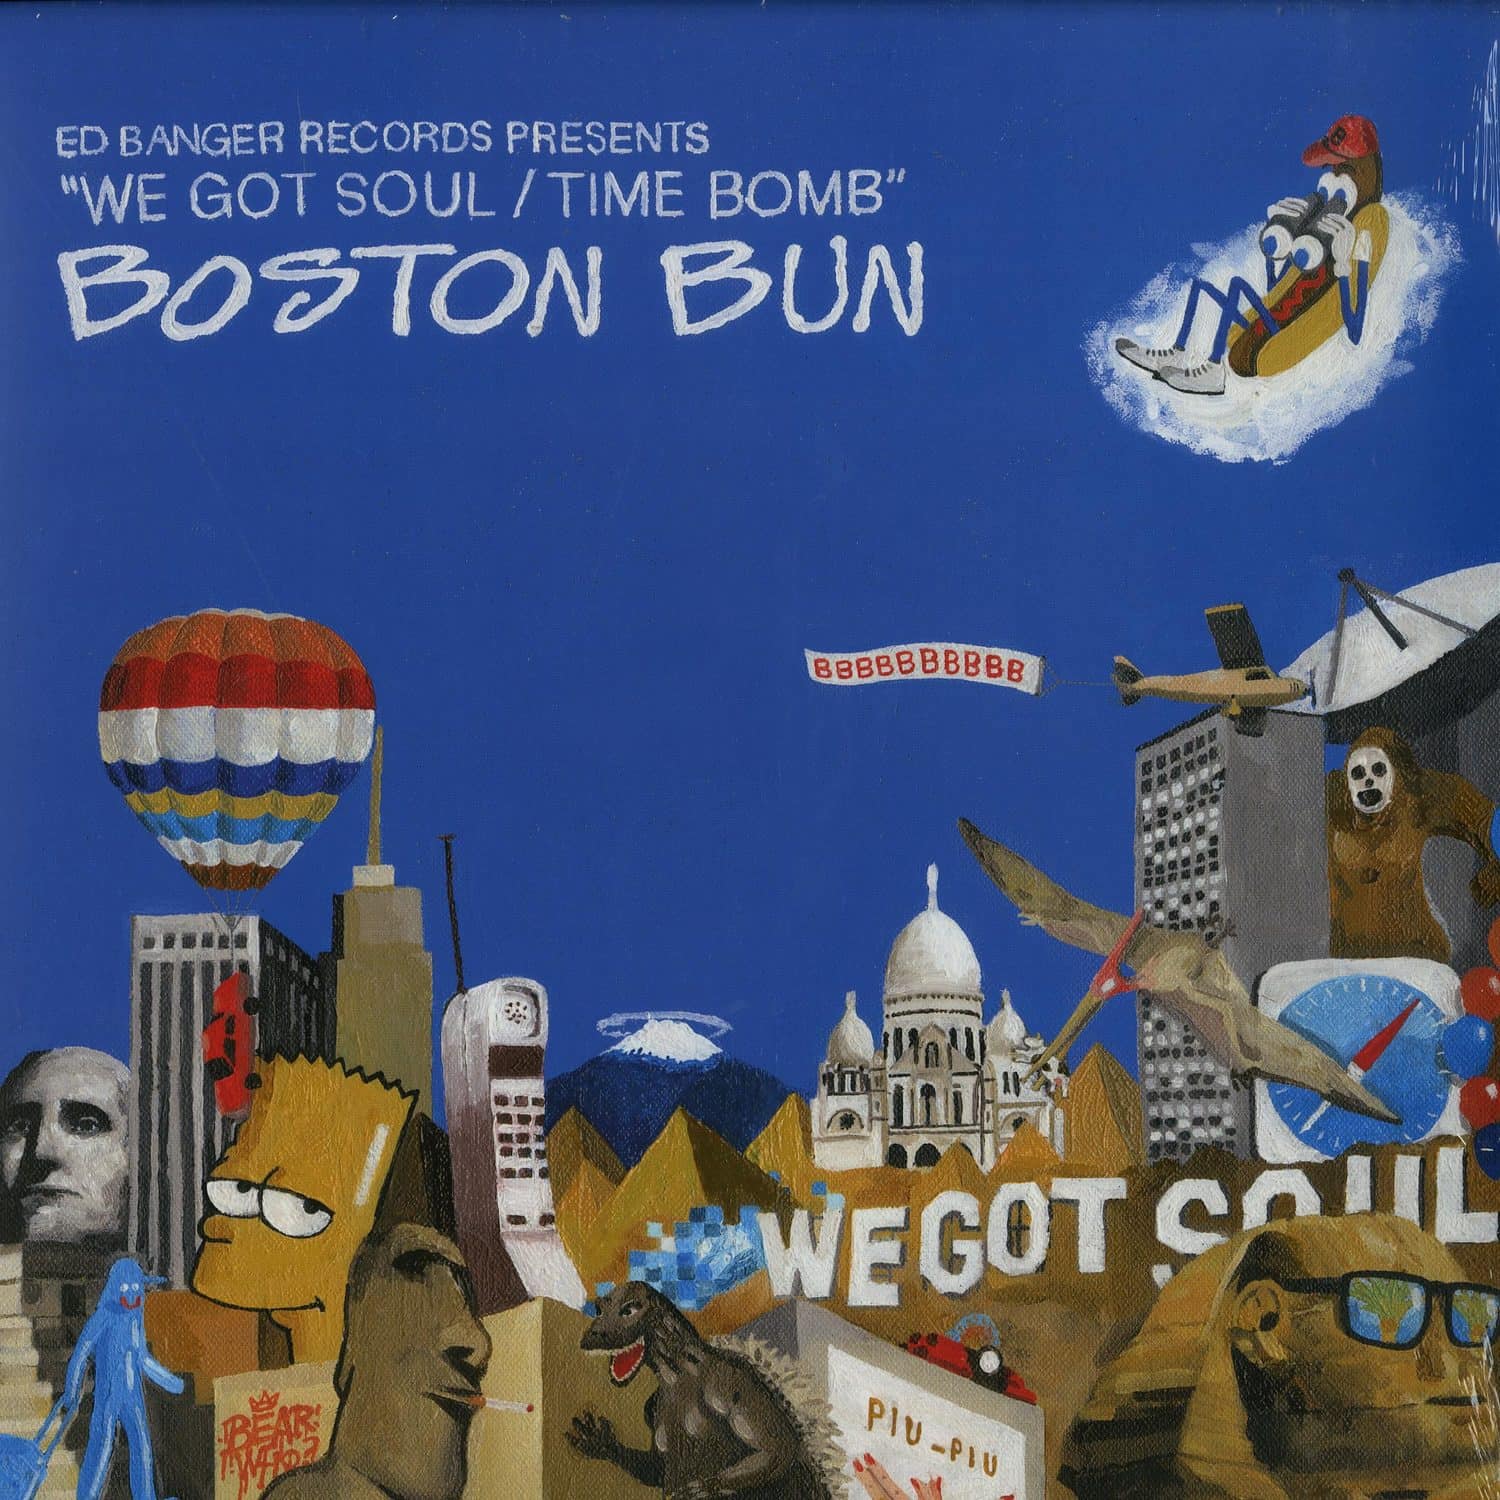 Boston Bun - WE GOT SOUL